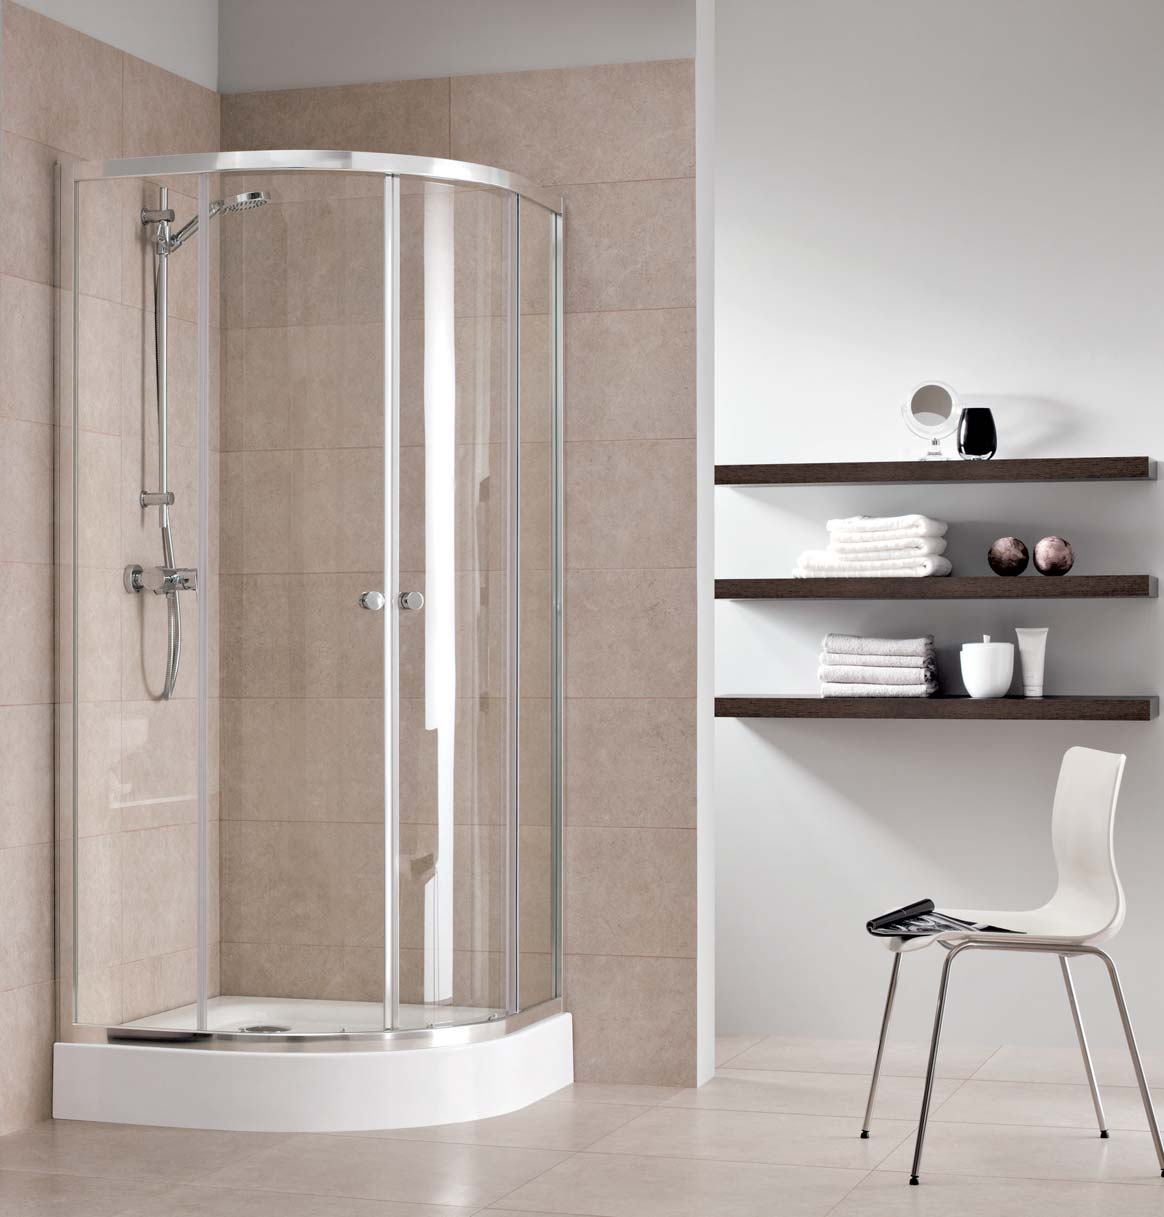 FIRST PRVÁ VOĽBA PRE NOVÚ KÚPEĽŇU Do novej alebo rekonštruovanej kúpeľne je séria First prvou voľbou moderný dizajn, zodpovedajúce sprchovacie vaničky a zostavy vaničiek s kútmi, to všetko za výbornú